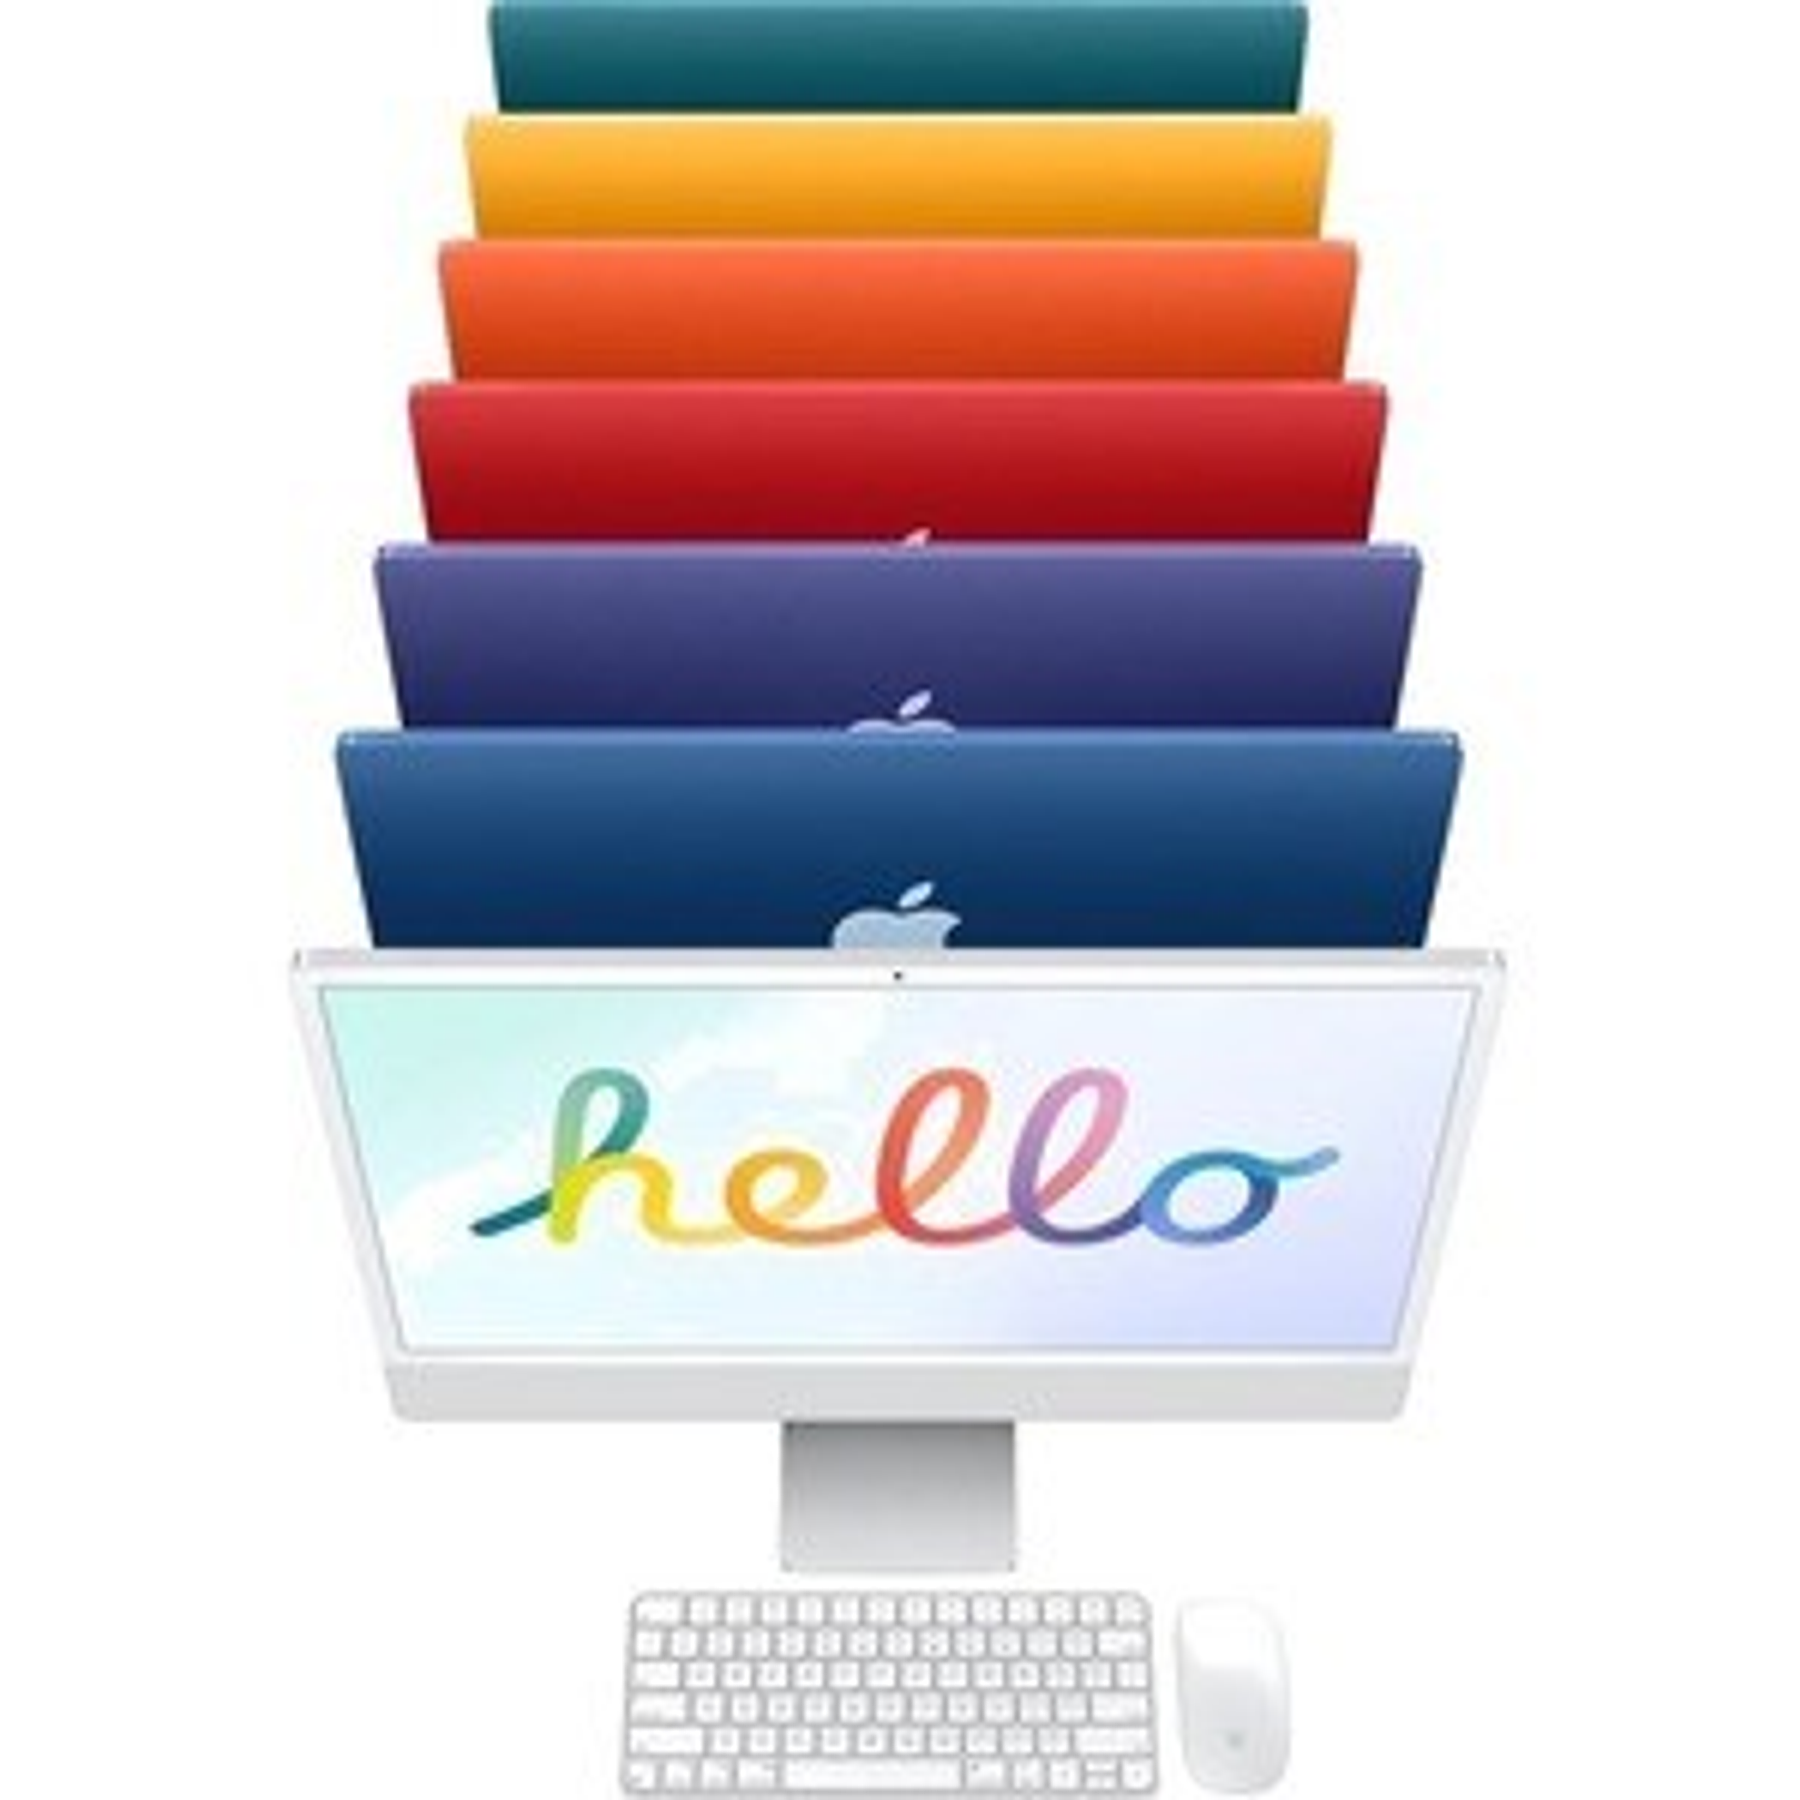 Apple iMac [Cotización a Pedido]